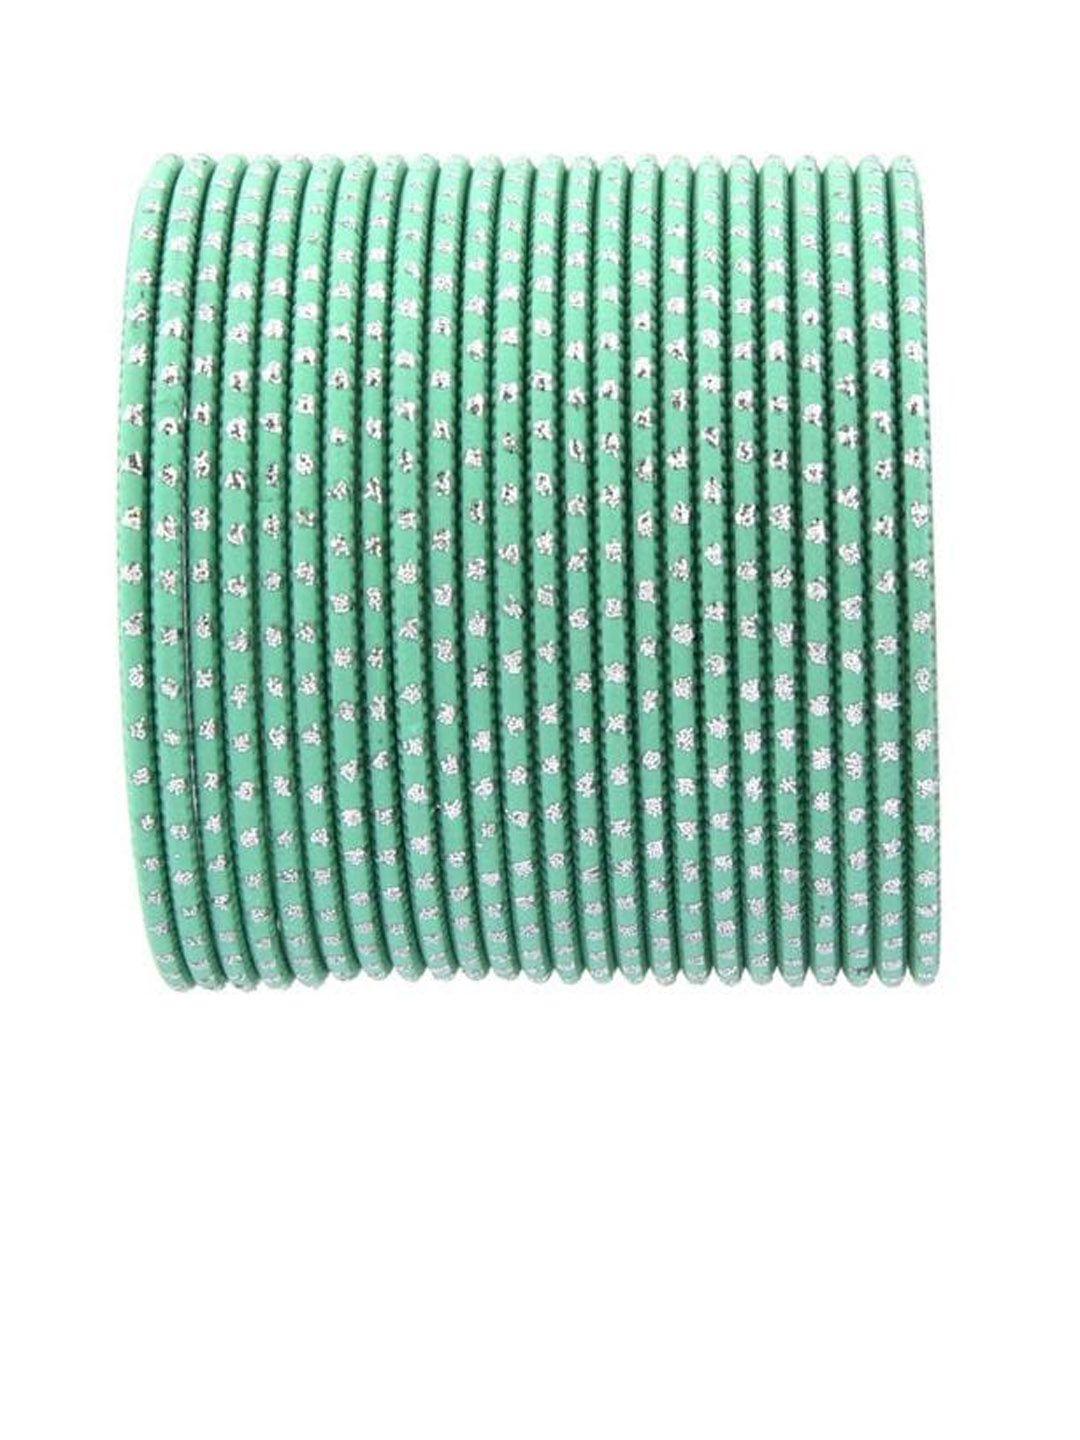 efulgenz green & silver-toned set of 24 embellished bangles